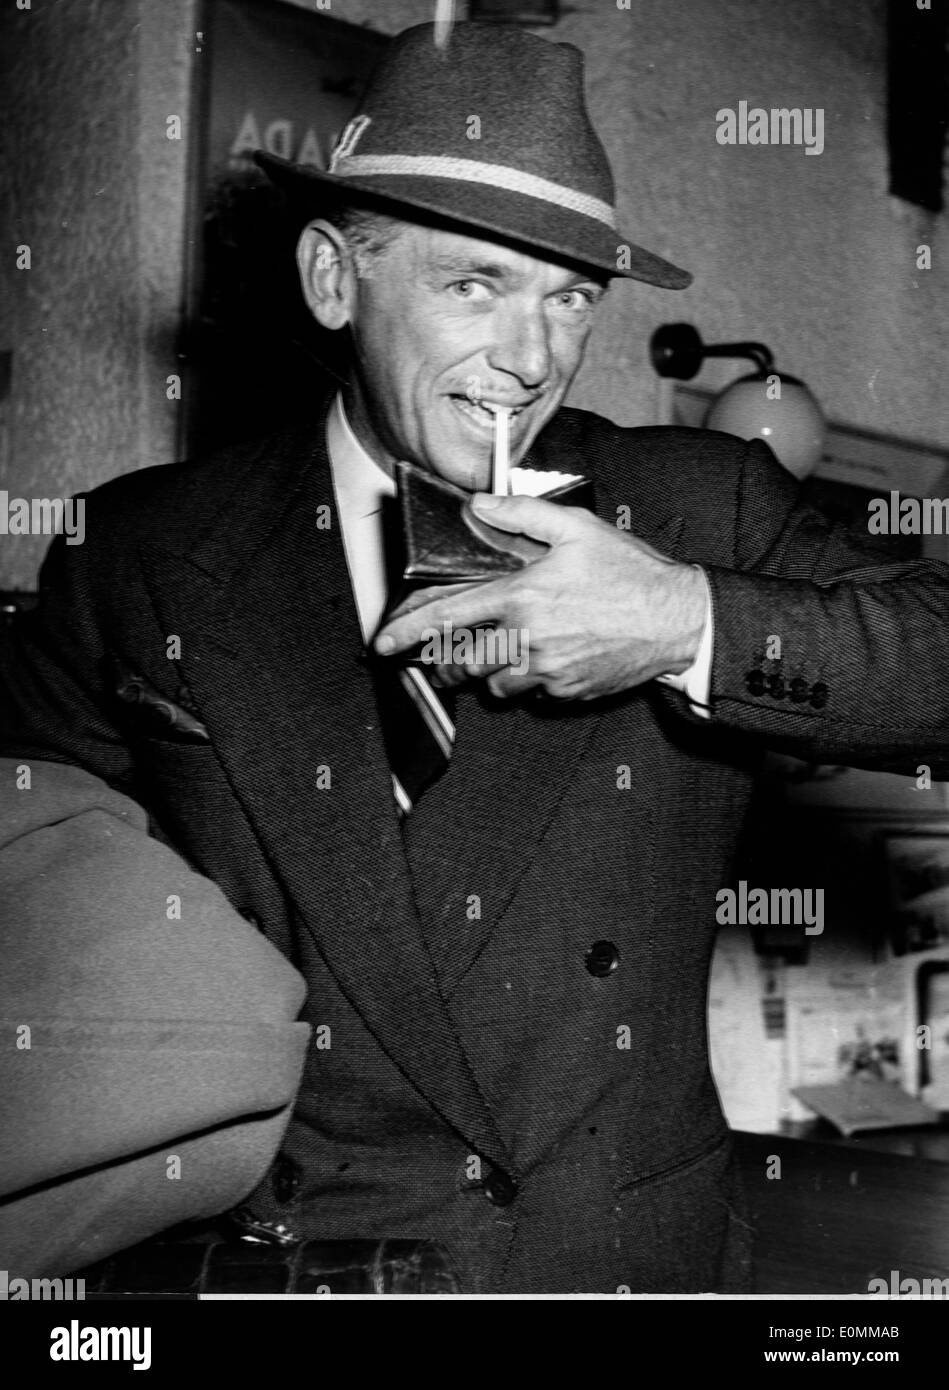 Acteur Douglas Fairbanks, Jr. fume cigarette Banque D'Images